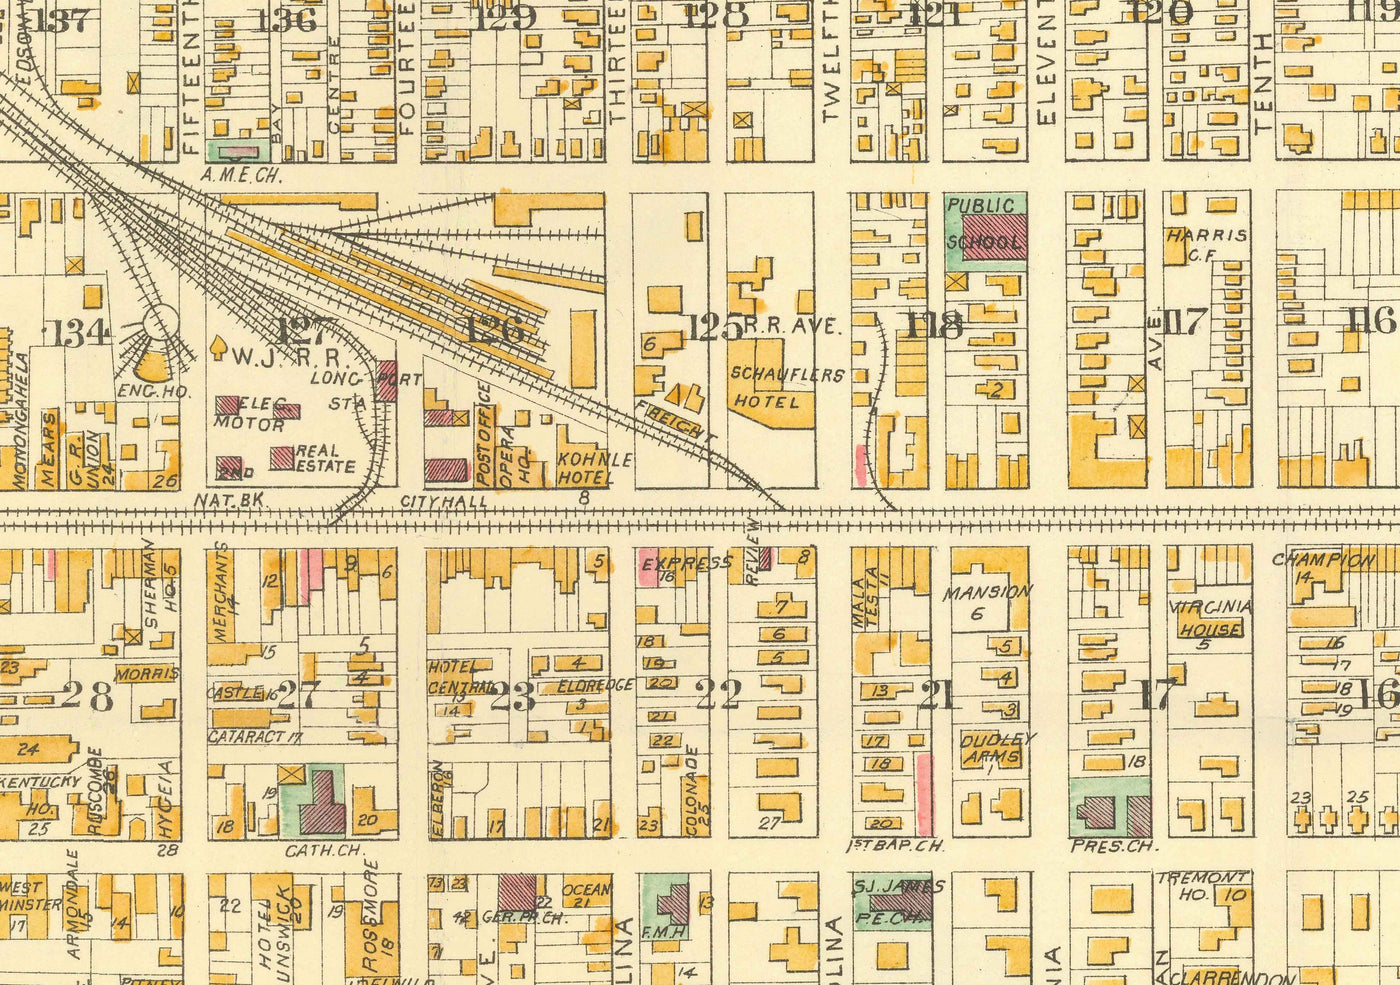 Mapa antiguo de Atlantic City, Nueva Jersey, en 1891 por AY Lee - Boardwalk, Pacific, Baltic, Atlantic, Delaware Avenue